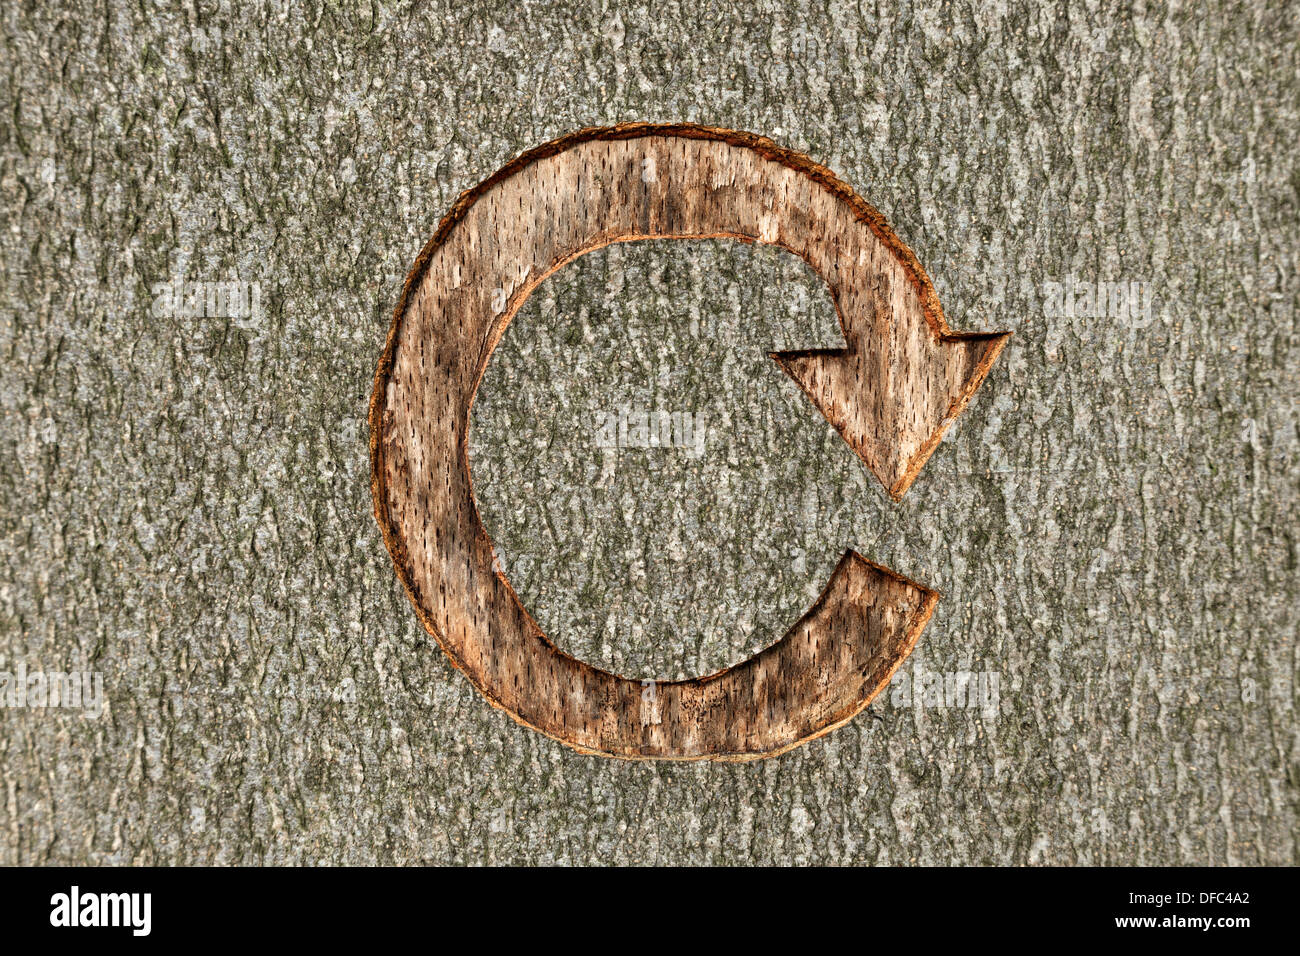 Das Recycling-Symbol geschnitzt in einen Baum in bewirtschafteten Wäldern. Stockfoto